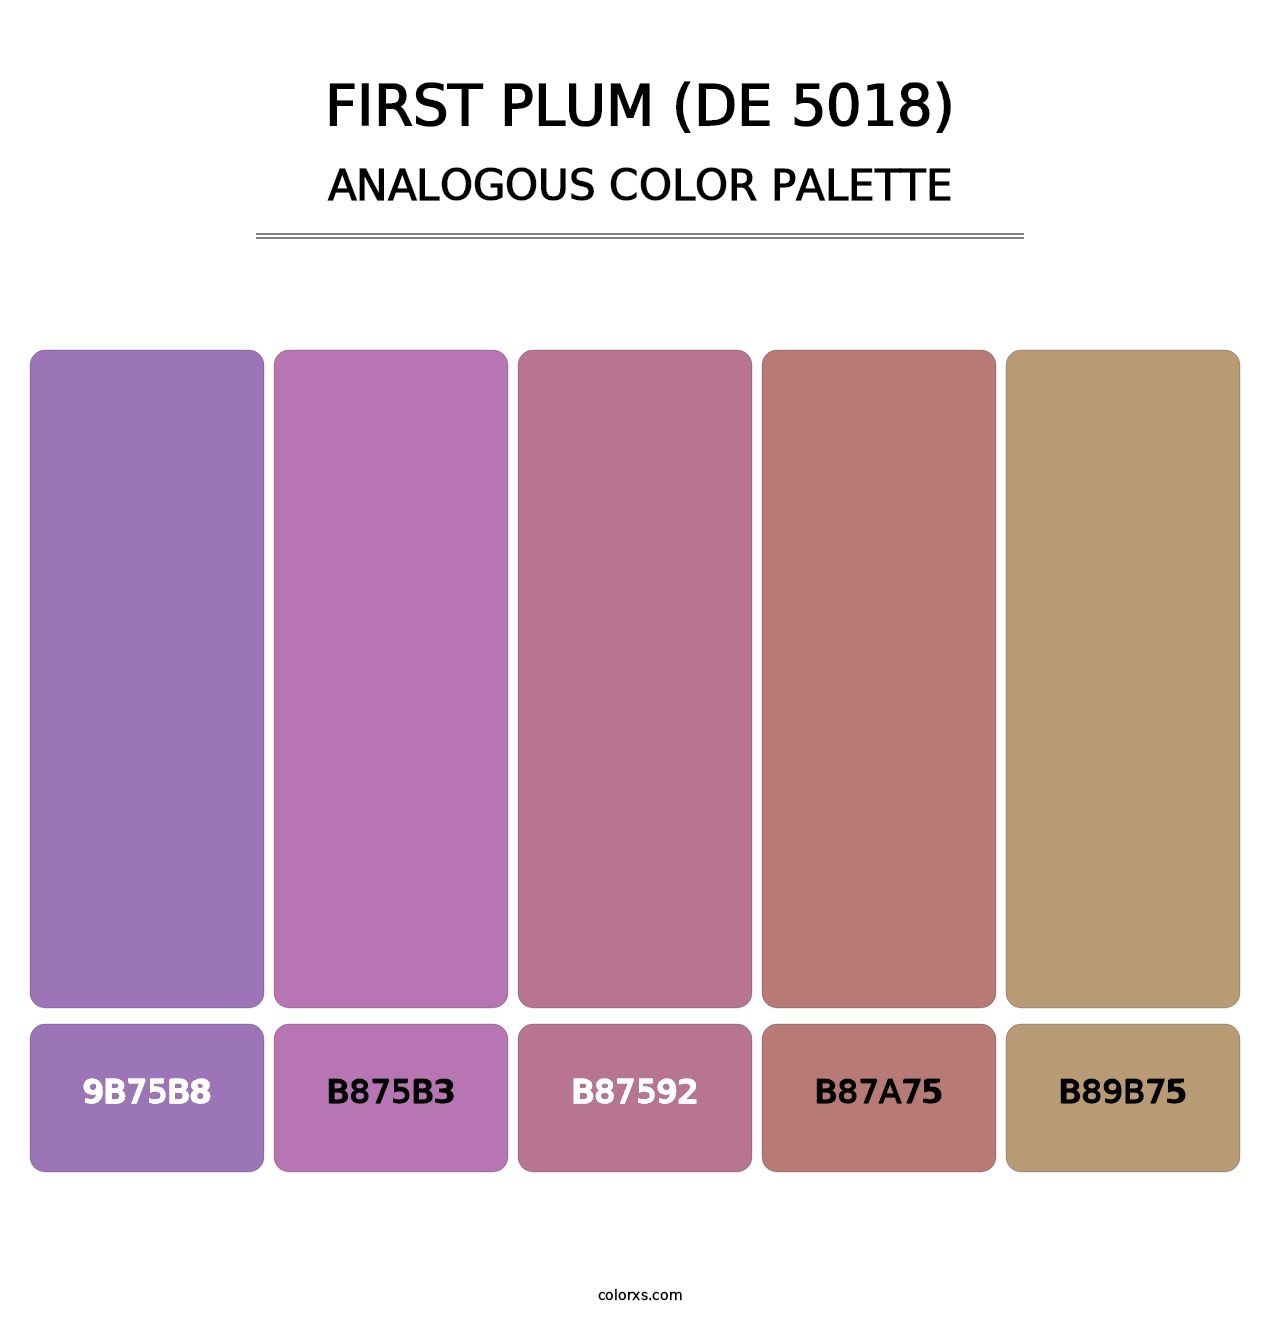 First Plum (DE 5018) - Analogous Color Palette